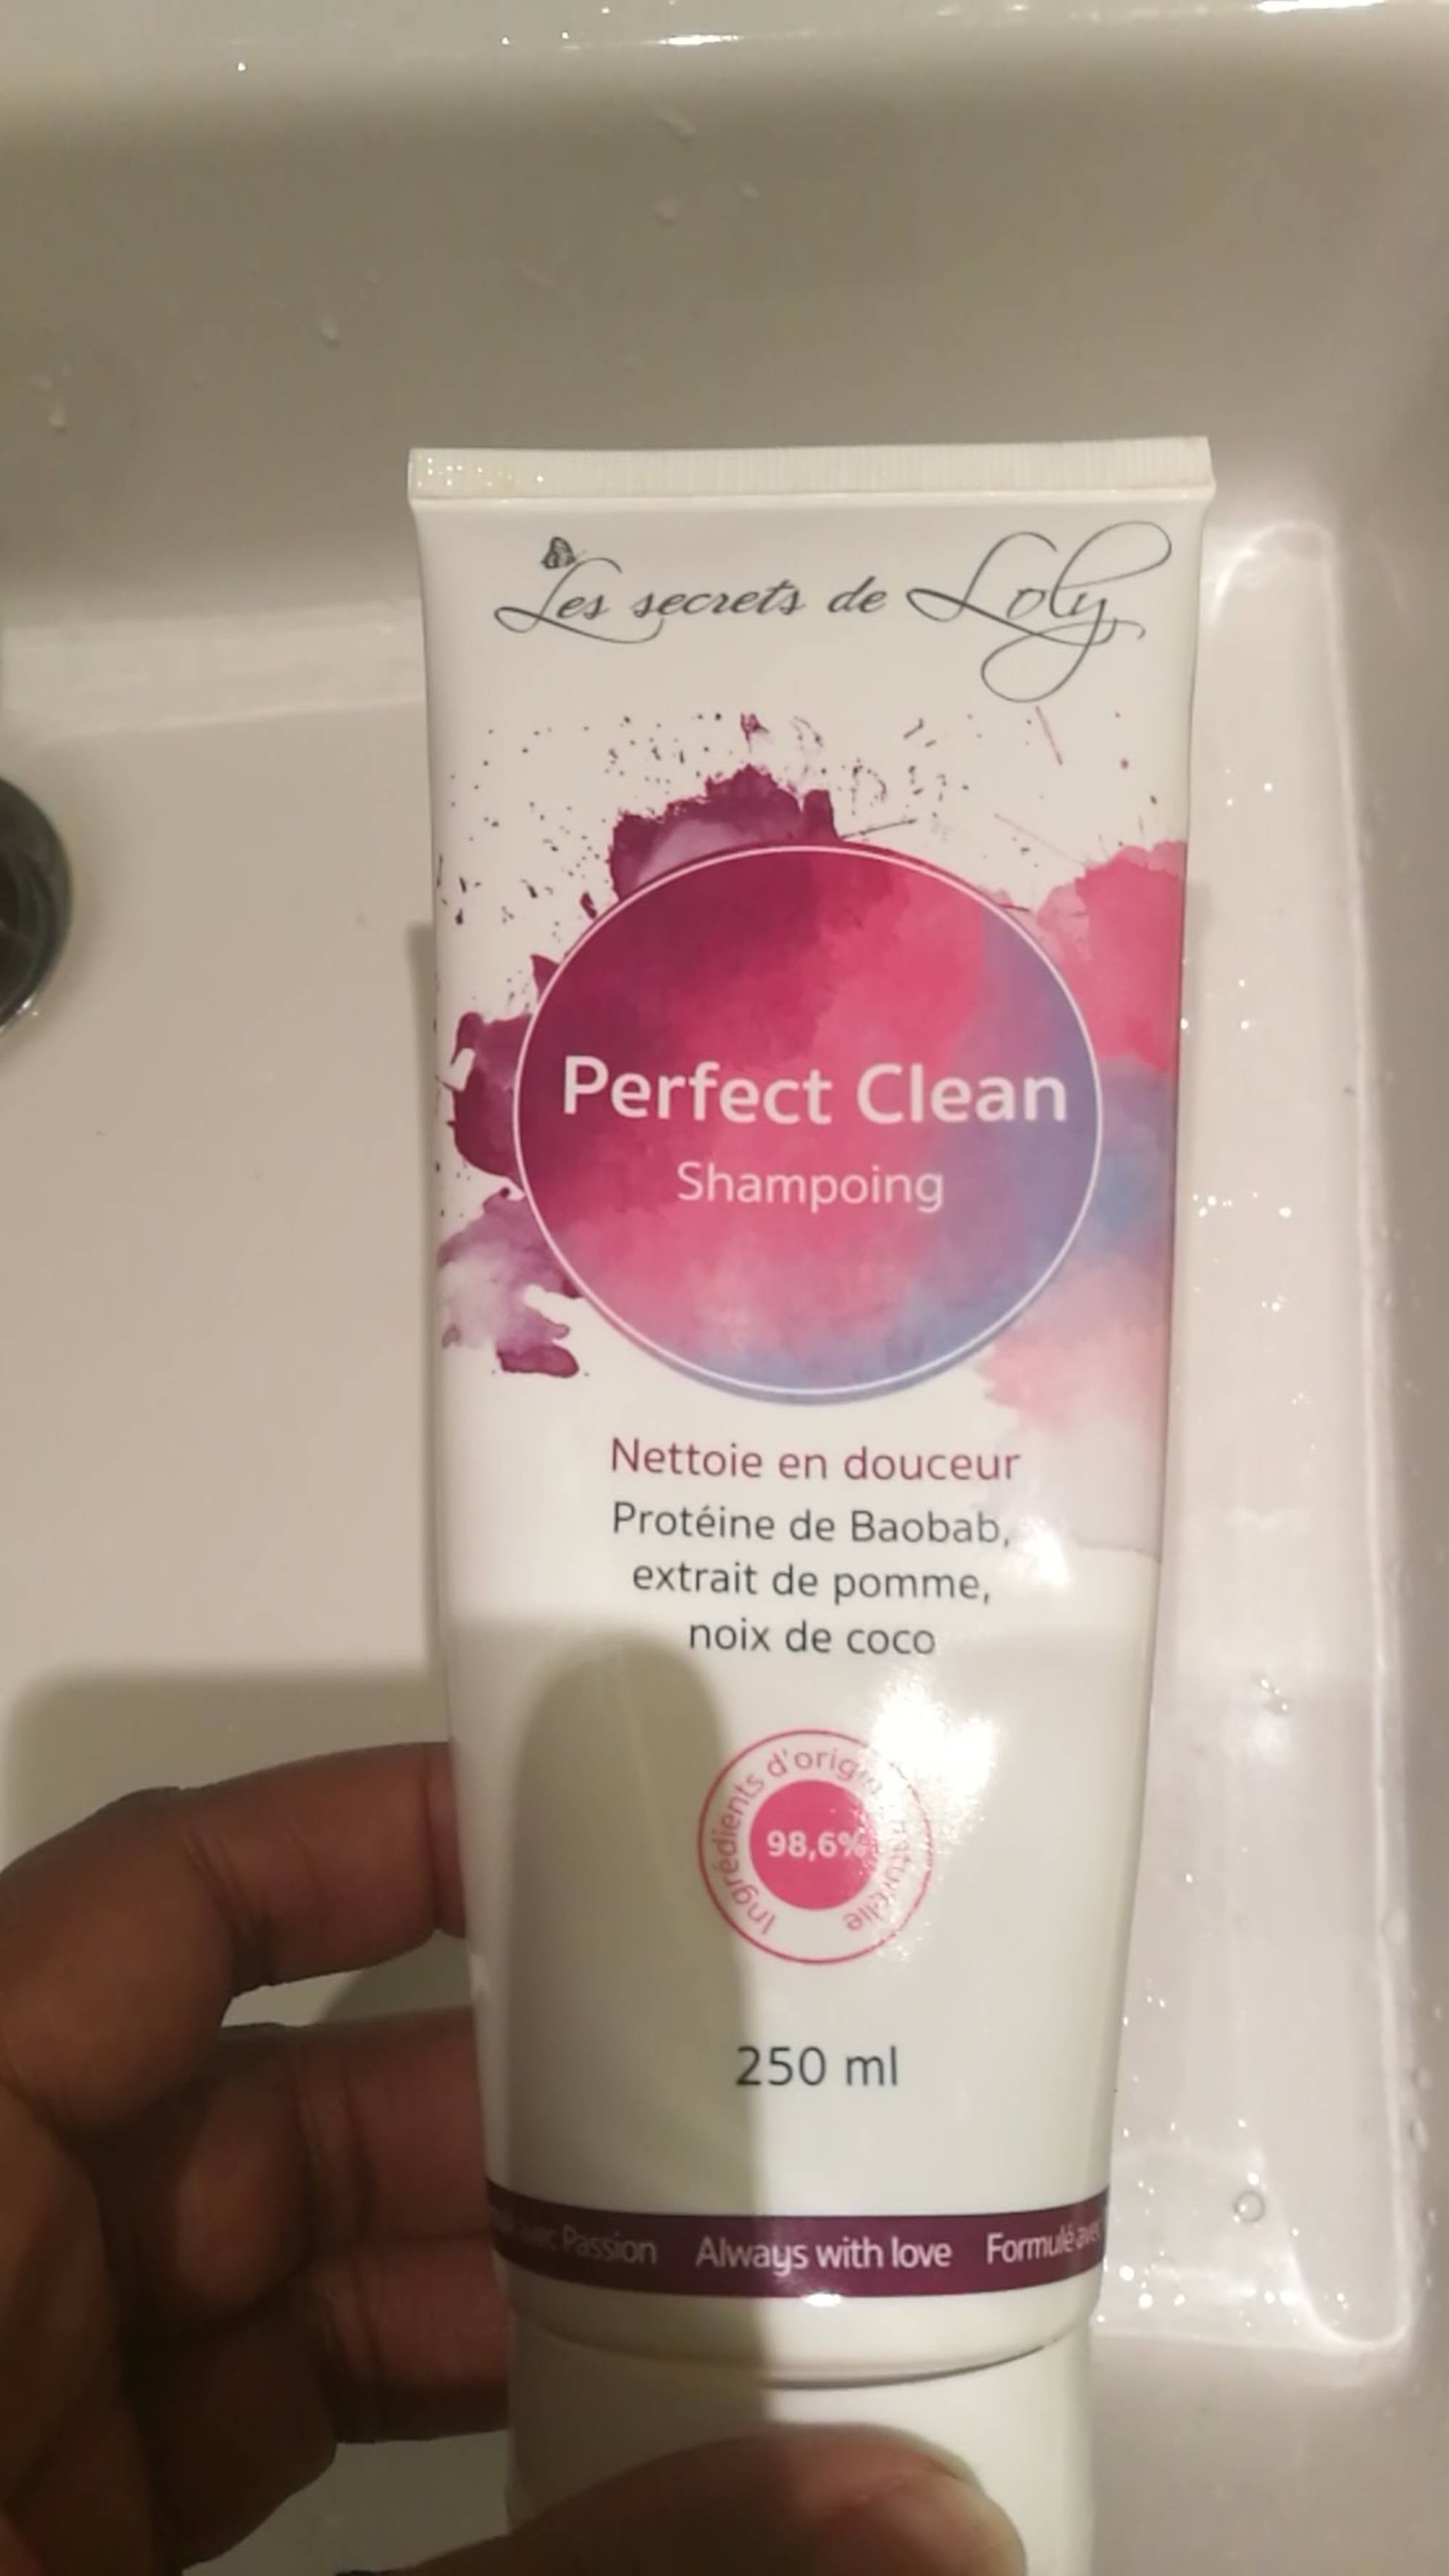 LES SECRETS DE LOLY - Perfect clean - Shampoing